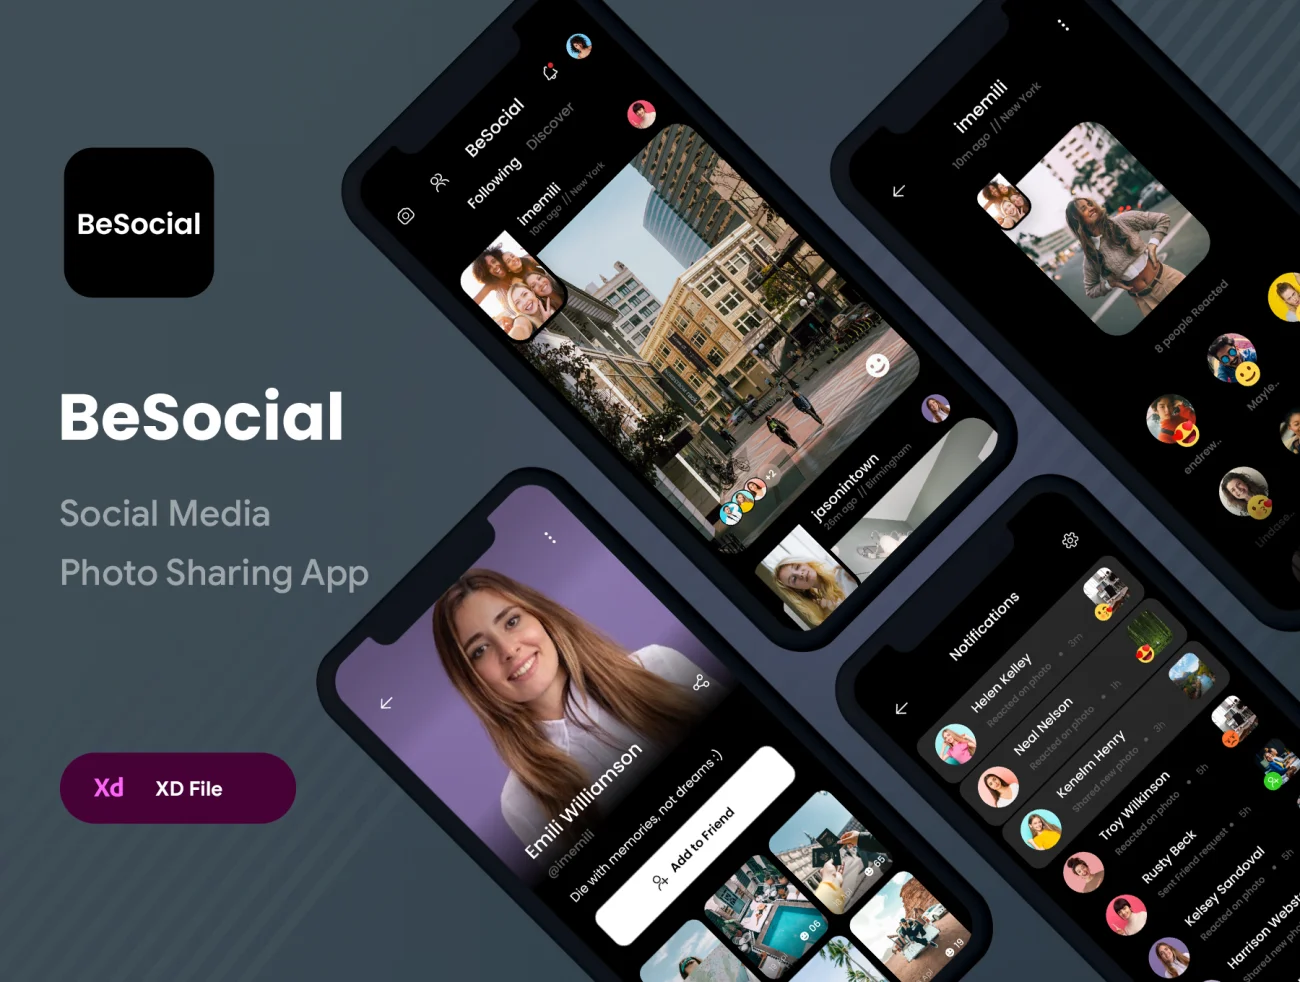 社交照片分享应用UI工具包 BeSocial Media Photo Sharing App .xd-UI/UX、ui套件、主页、介绍、卡片式、图表、应用、播放器、海报、社交-到位啦UI